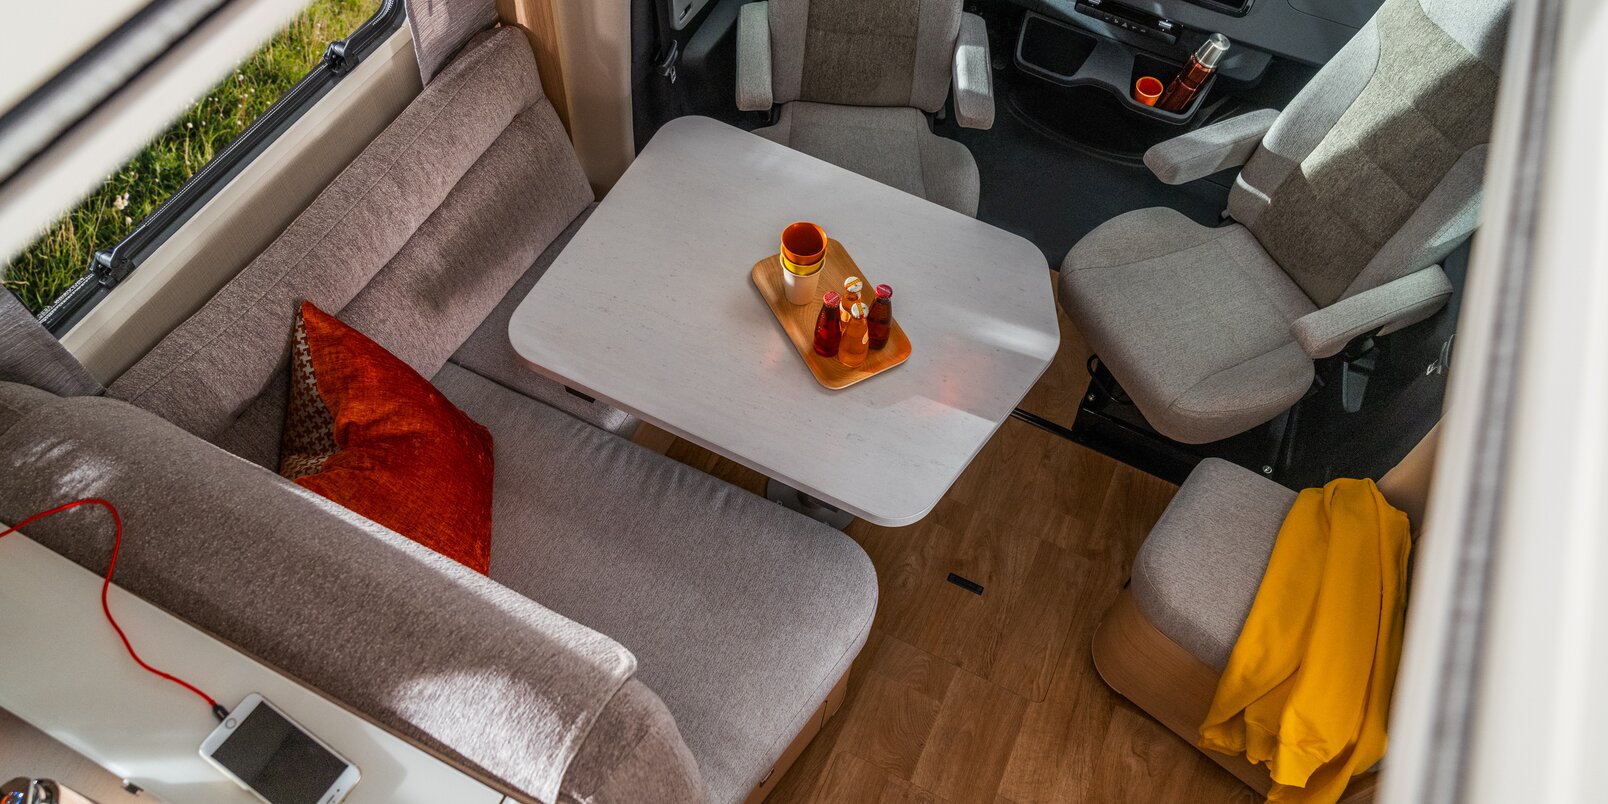 Dinette HYMER B ML-T 780 con sedili conducente e passeggero, cuscino rosso, sul ripiano della cucina si trovano un cellulare e degli occhiali da sole